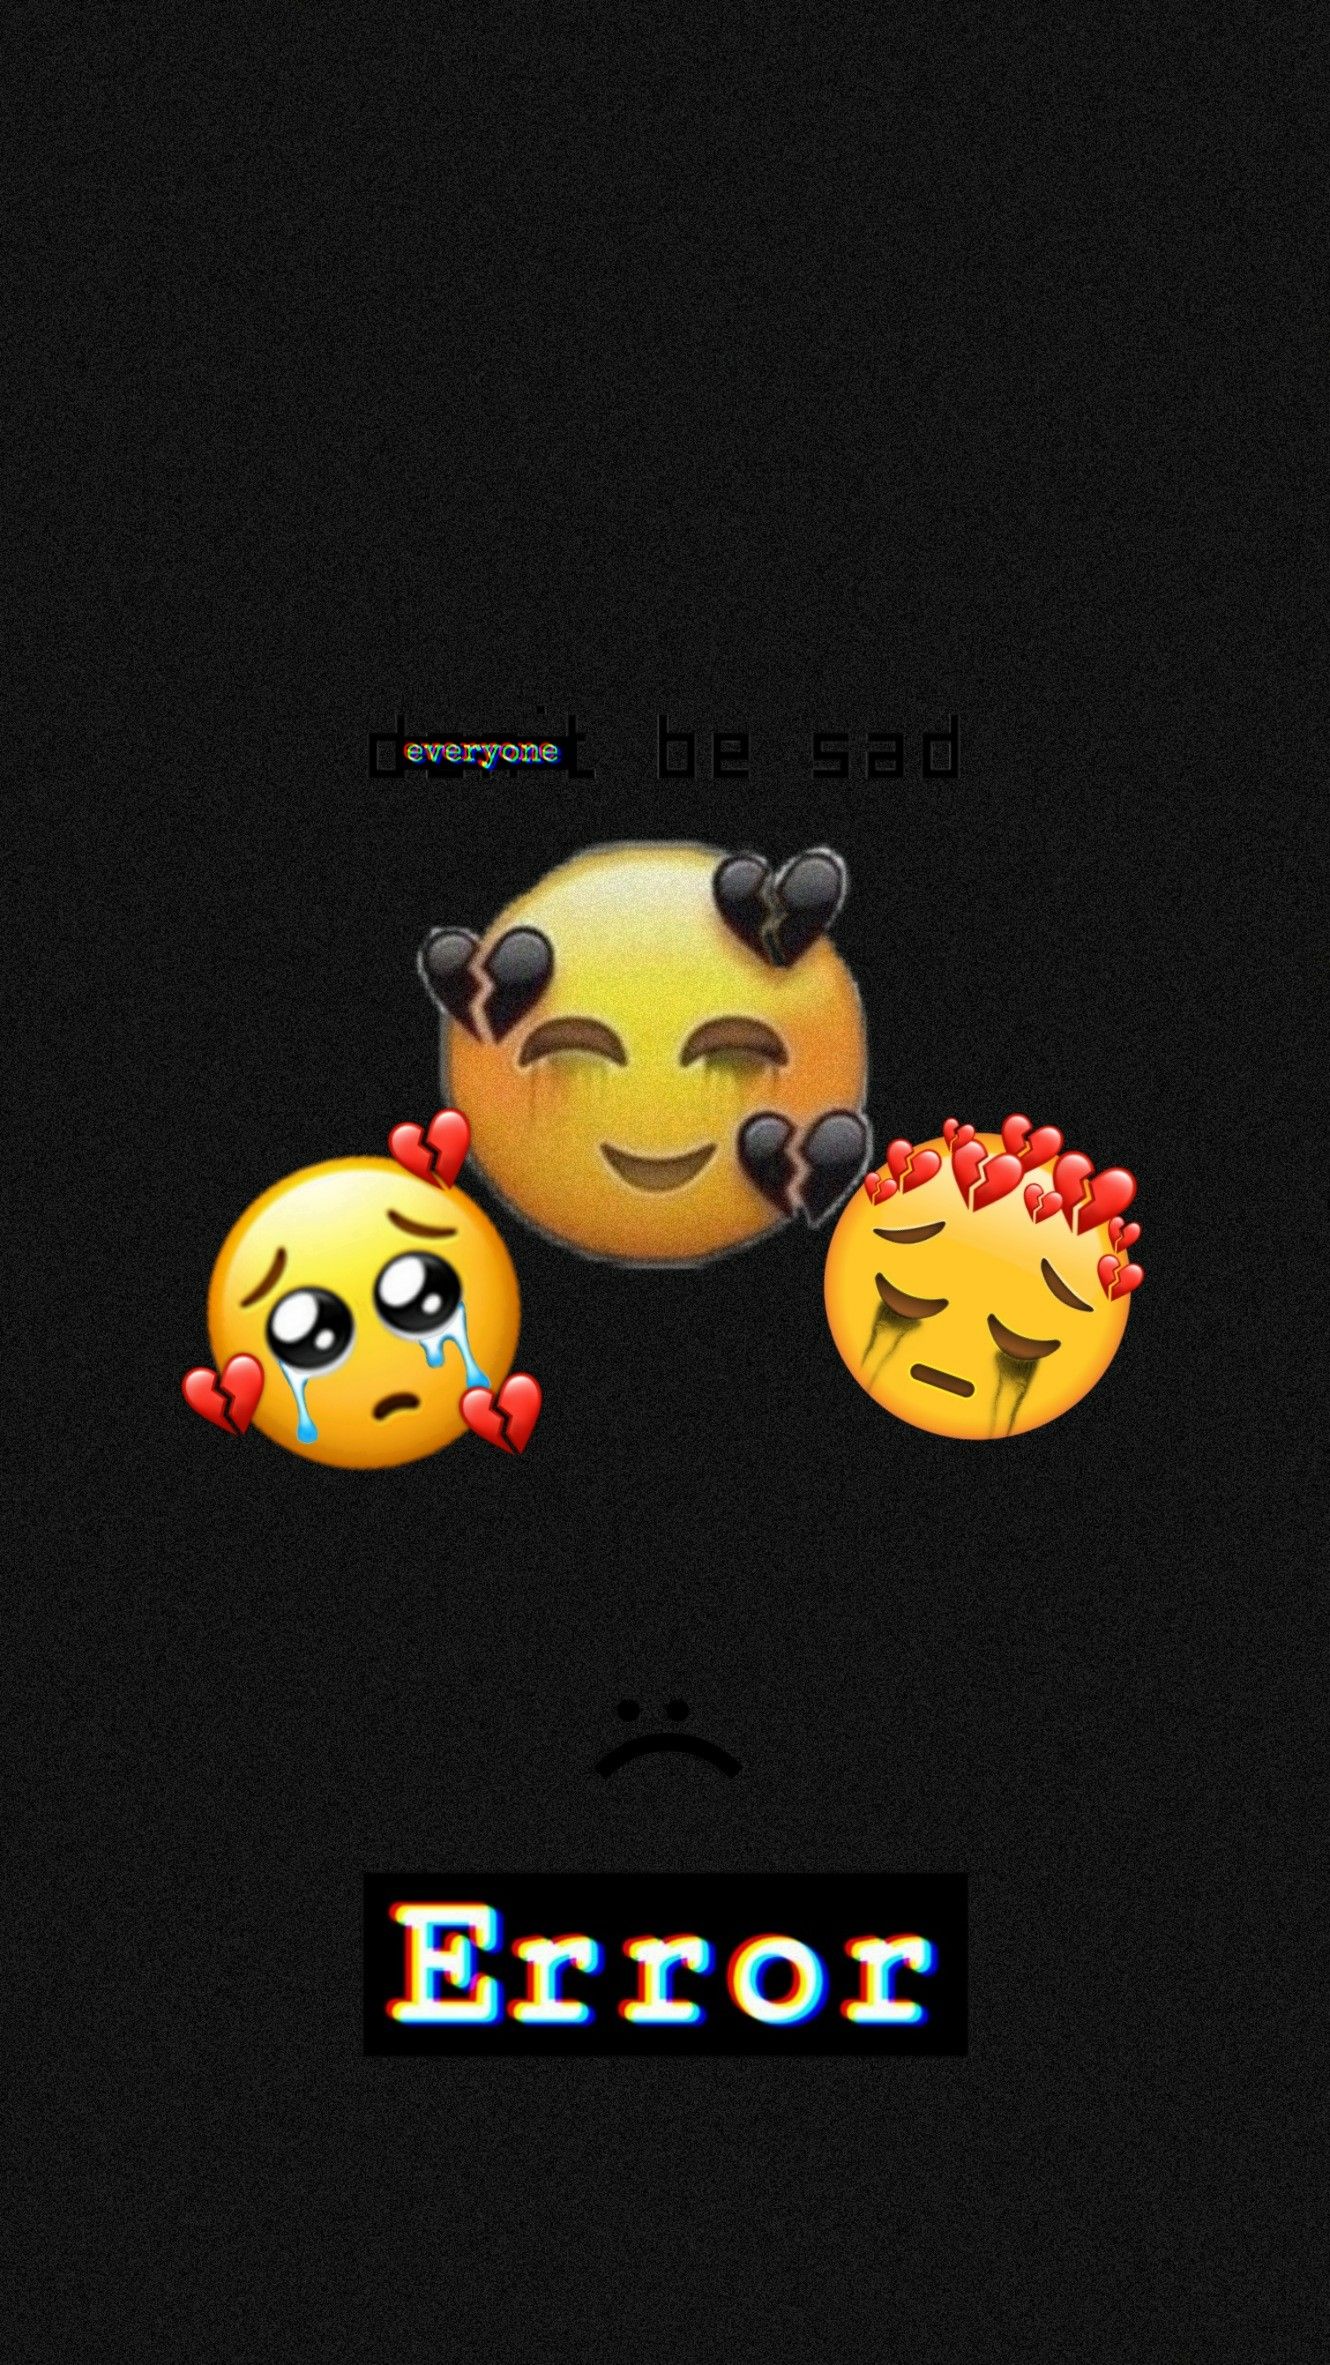 E m o j i s ideas. emoji picture, emoji wallpaper, cute emoji wallpaper